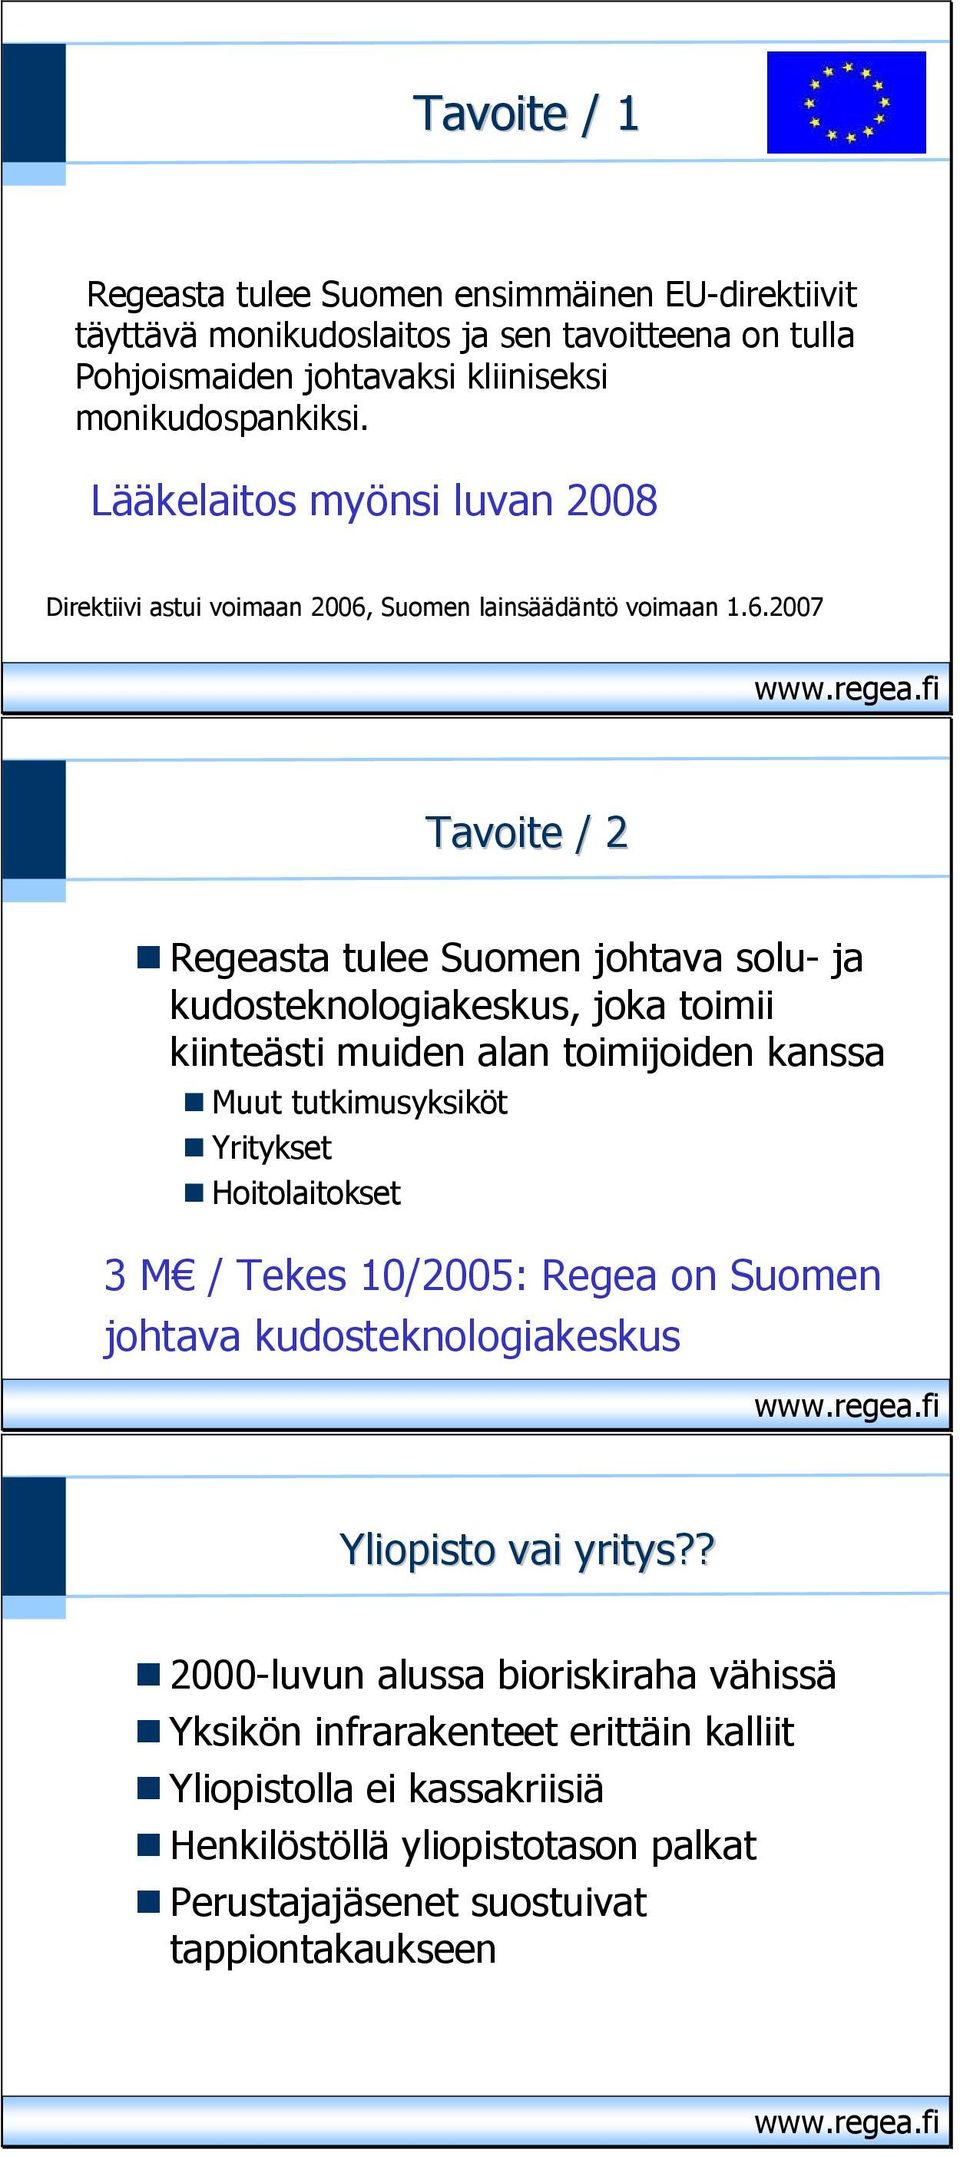 Suomen lainsäädäntö voimaan 1.6.